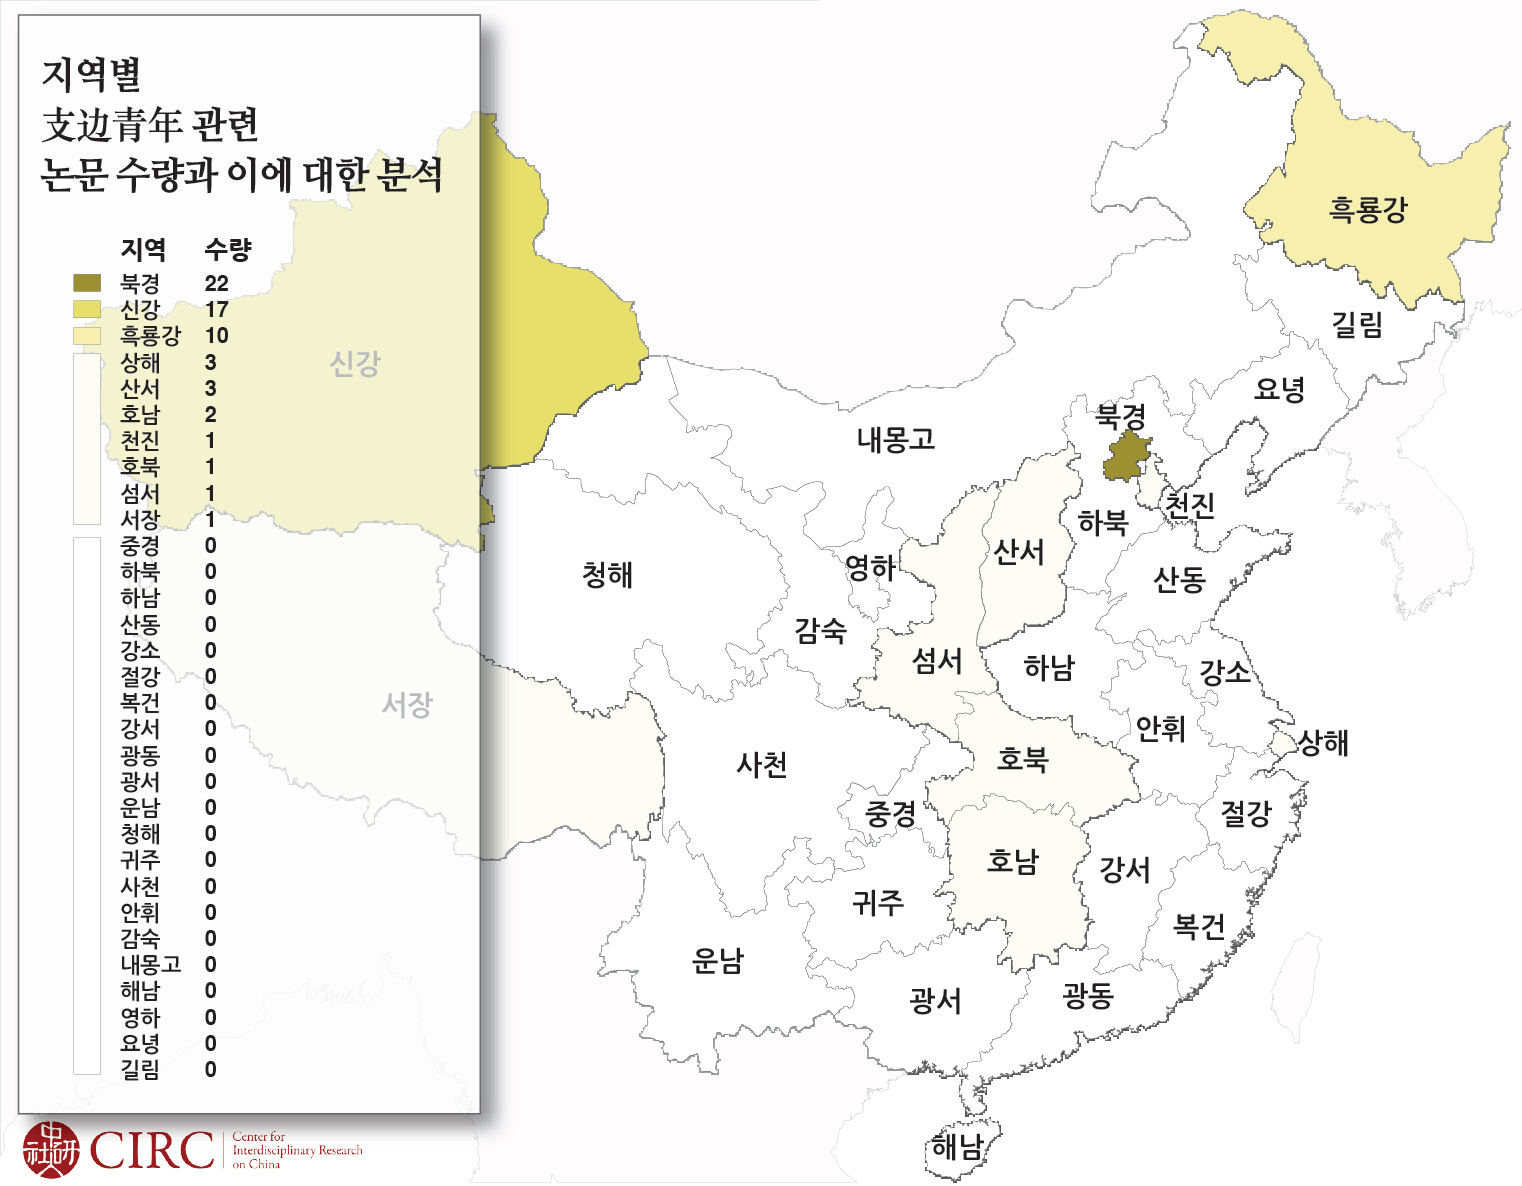 8월 지식지도 - 지역별 支边青年 관련 논문 수량과 이에 대한 분석.jpg